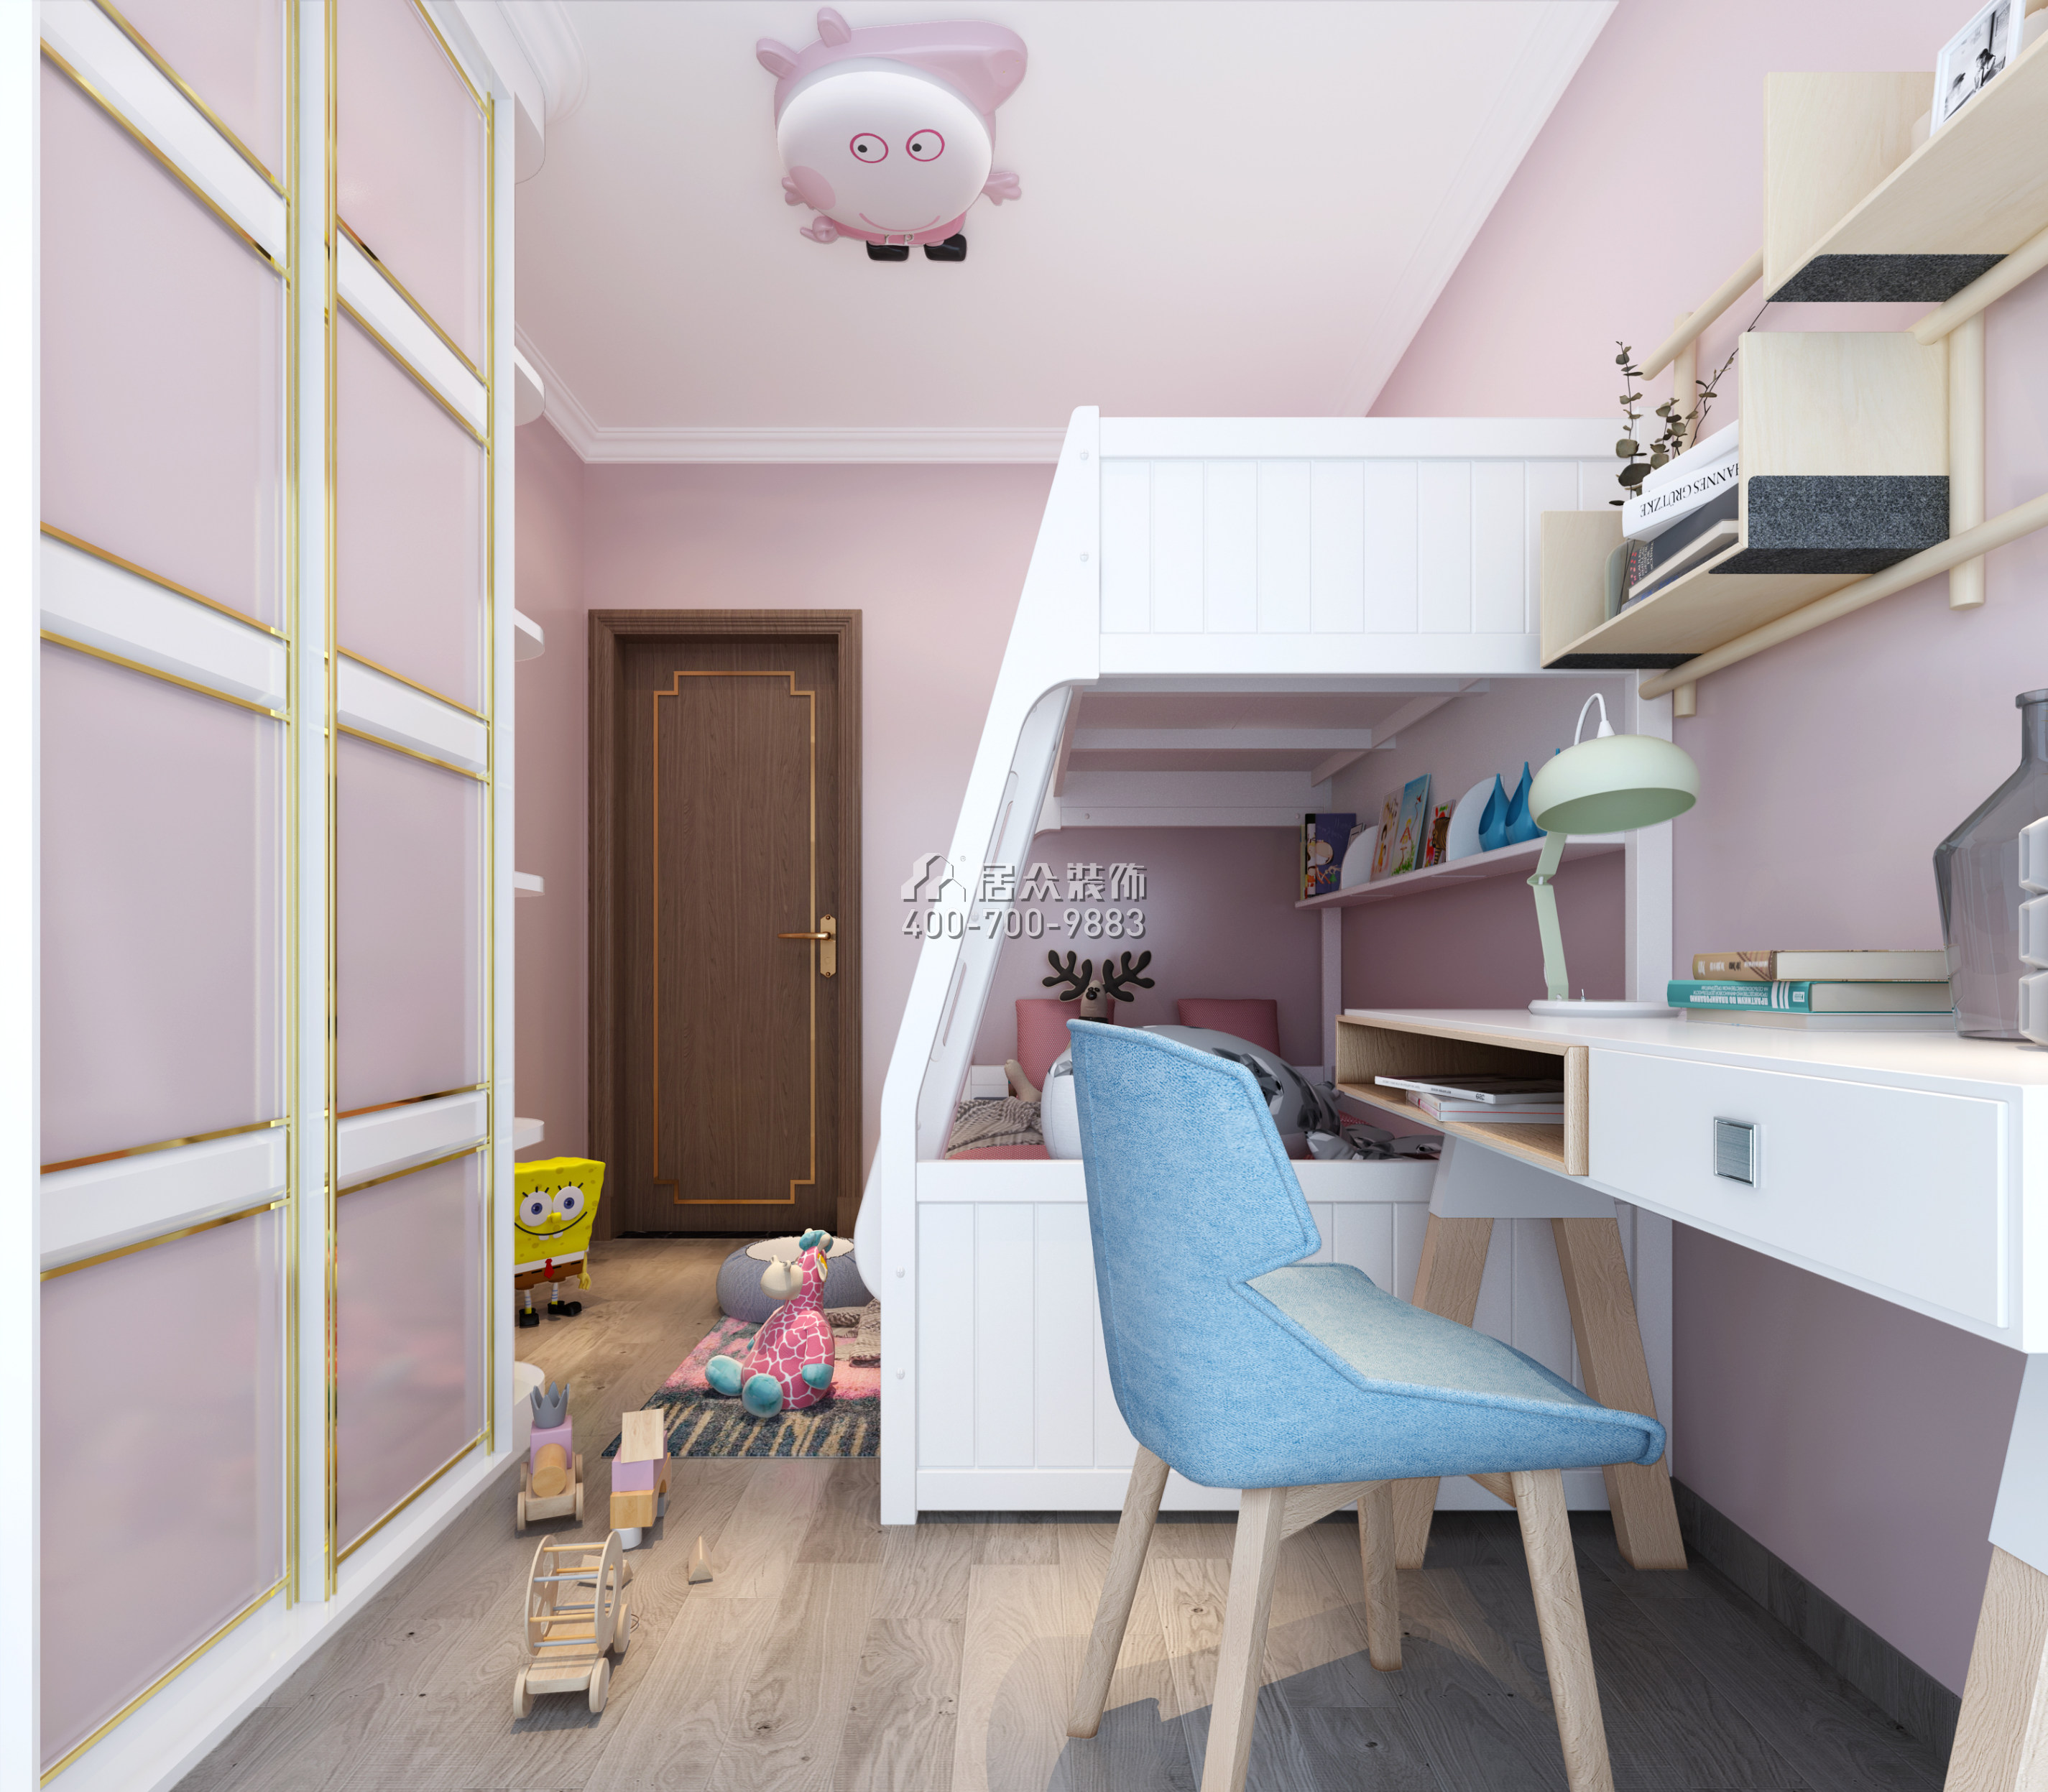 聯投東方華府二期105平方米中式風格平層戶型兒童房裝修效果圖